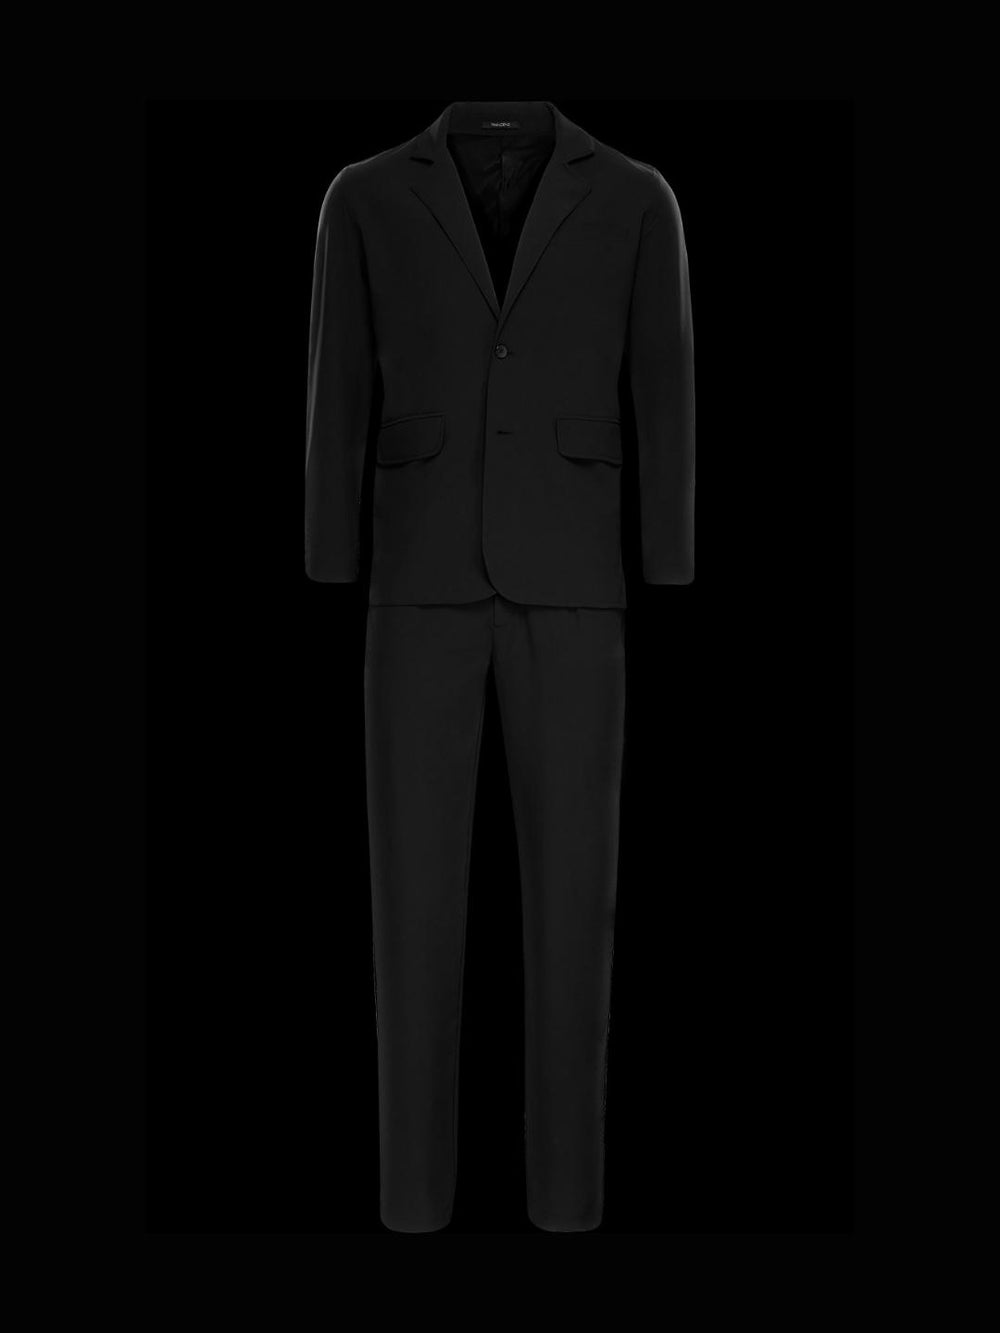 Ultra Suit 1.0 - 套裝組合 - TRANZEND